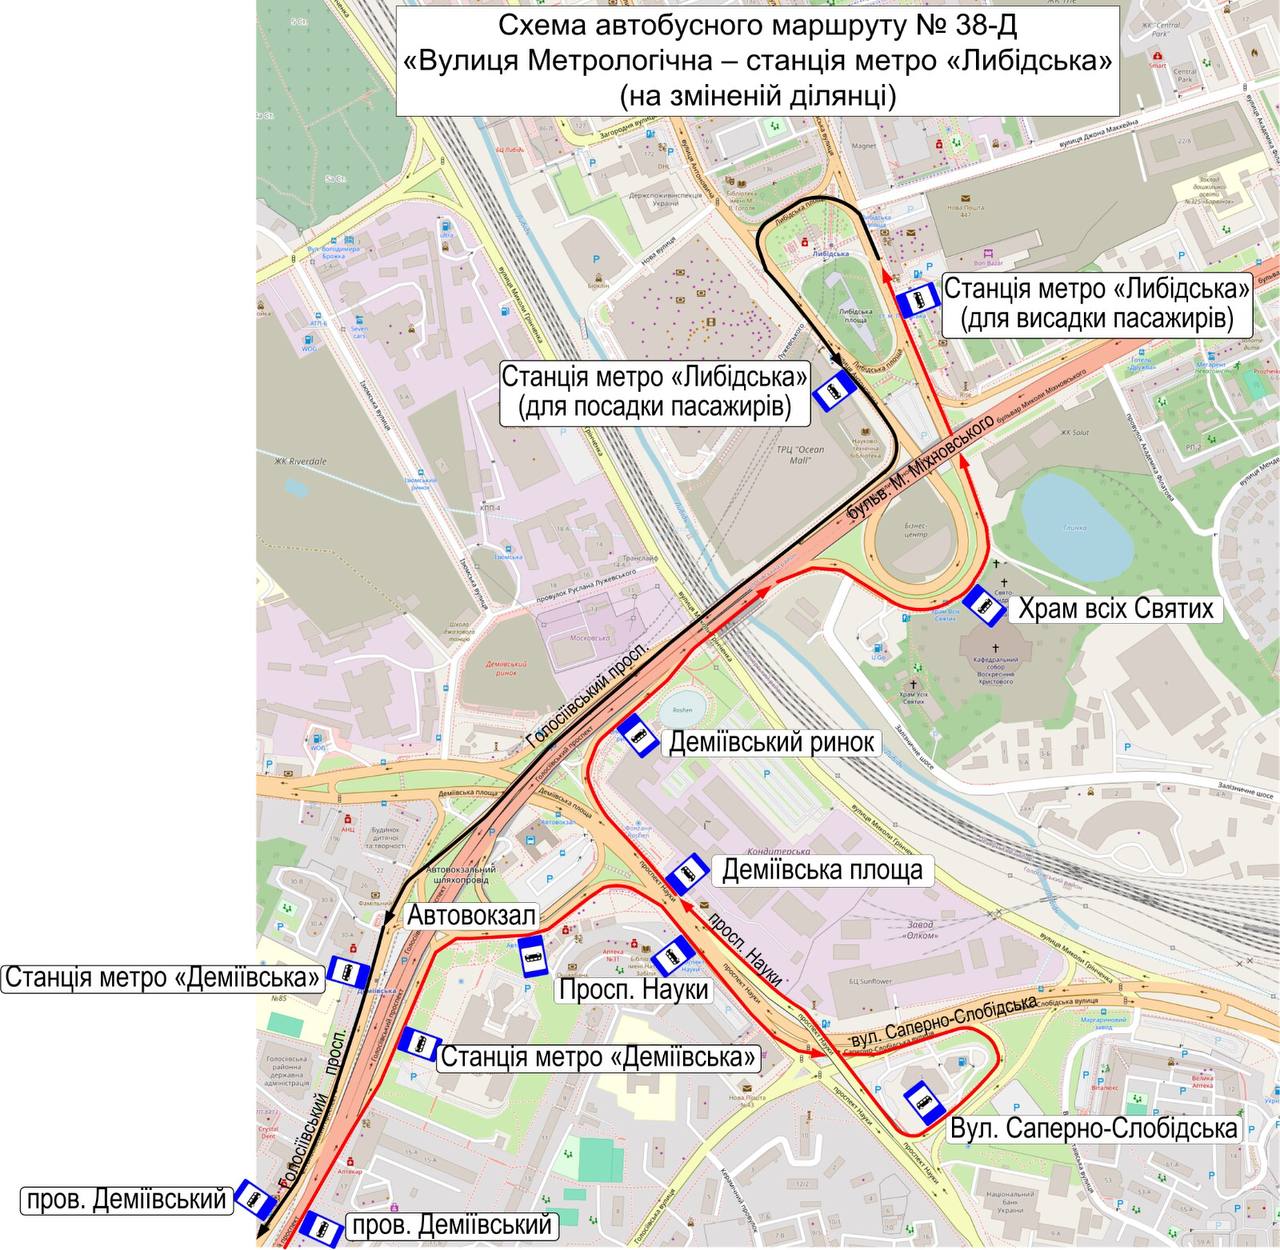 Киев запускает автобусы и троллейбусы вместо закрытого участка метро. Интервал – 1-3 мин